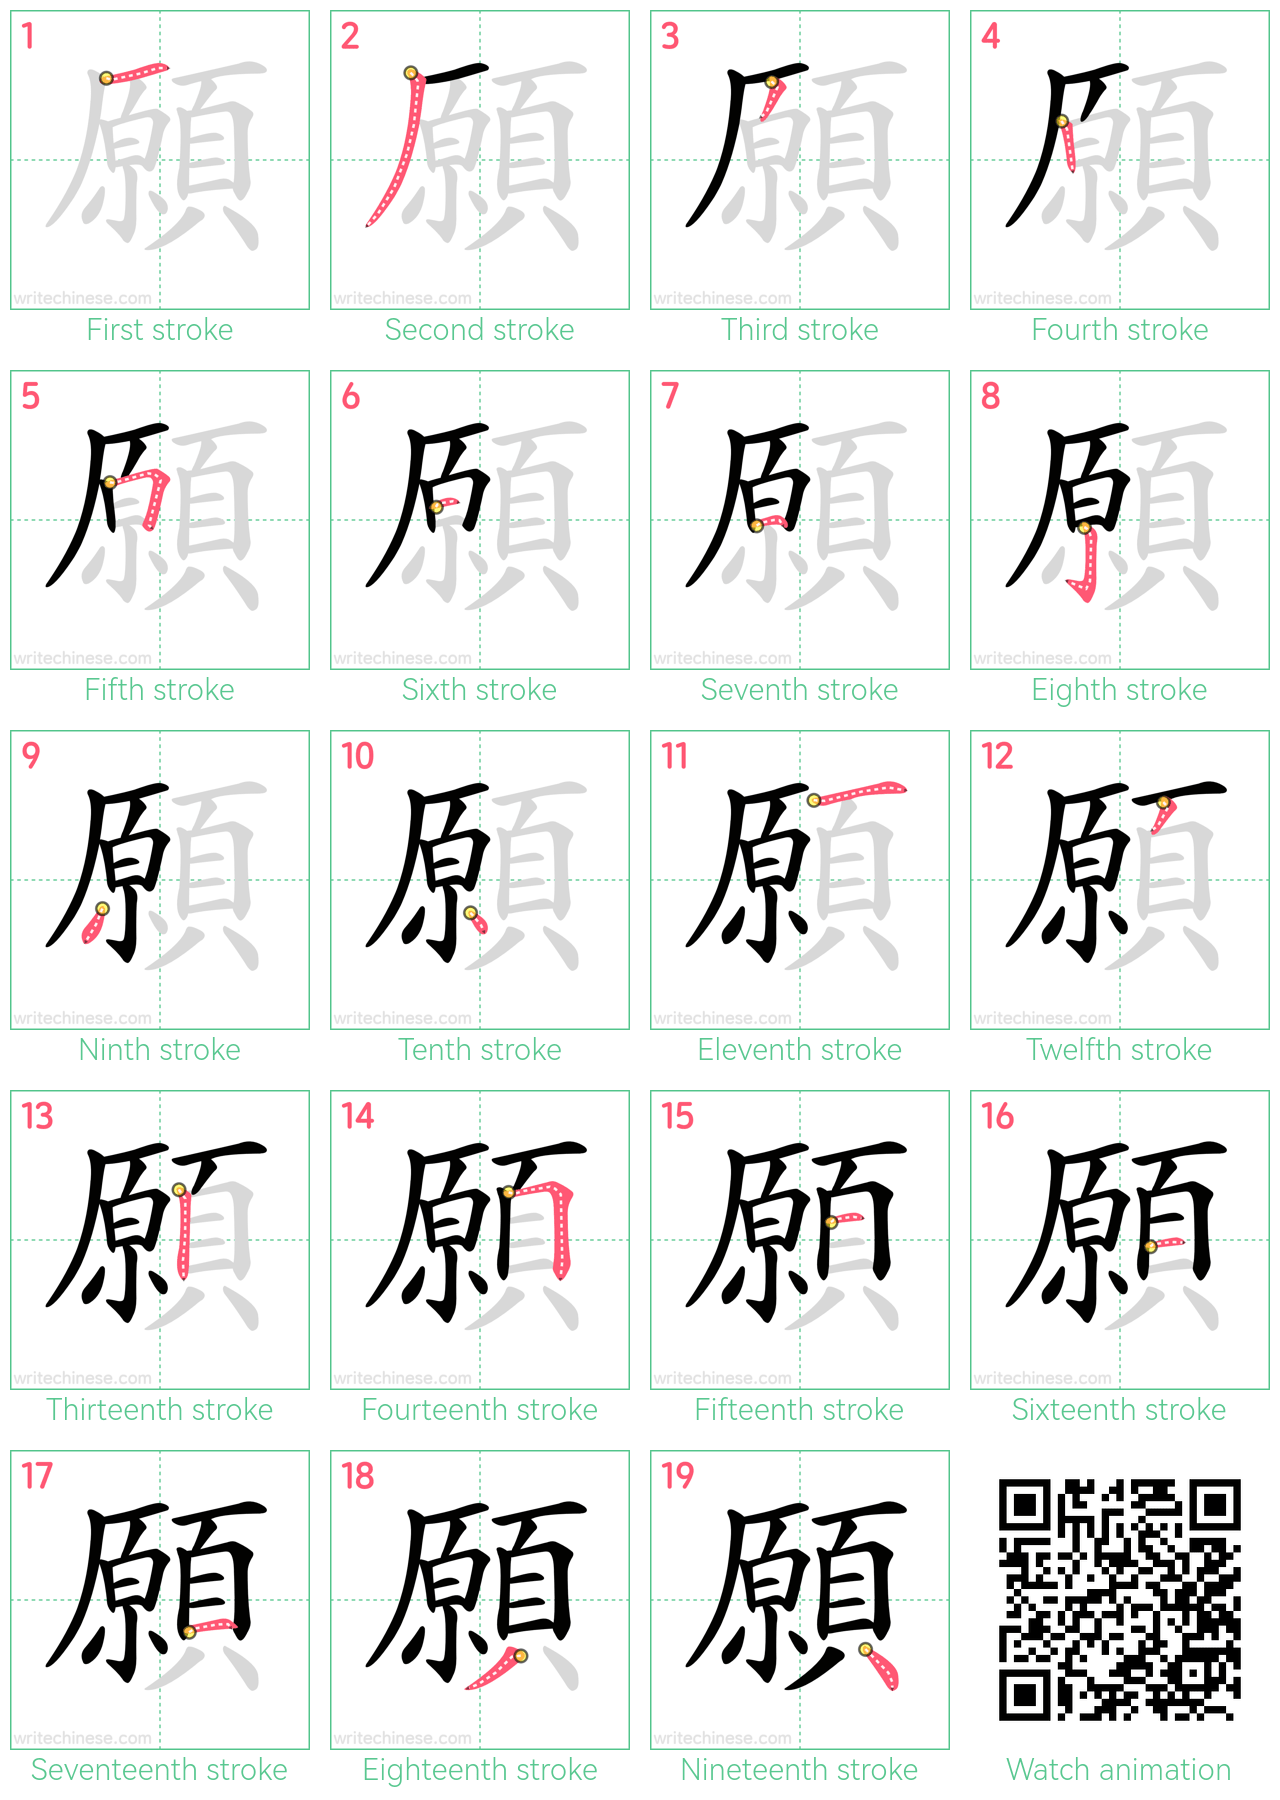 願 step-by-step stroke order diagrams